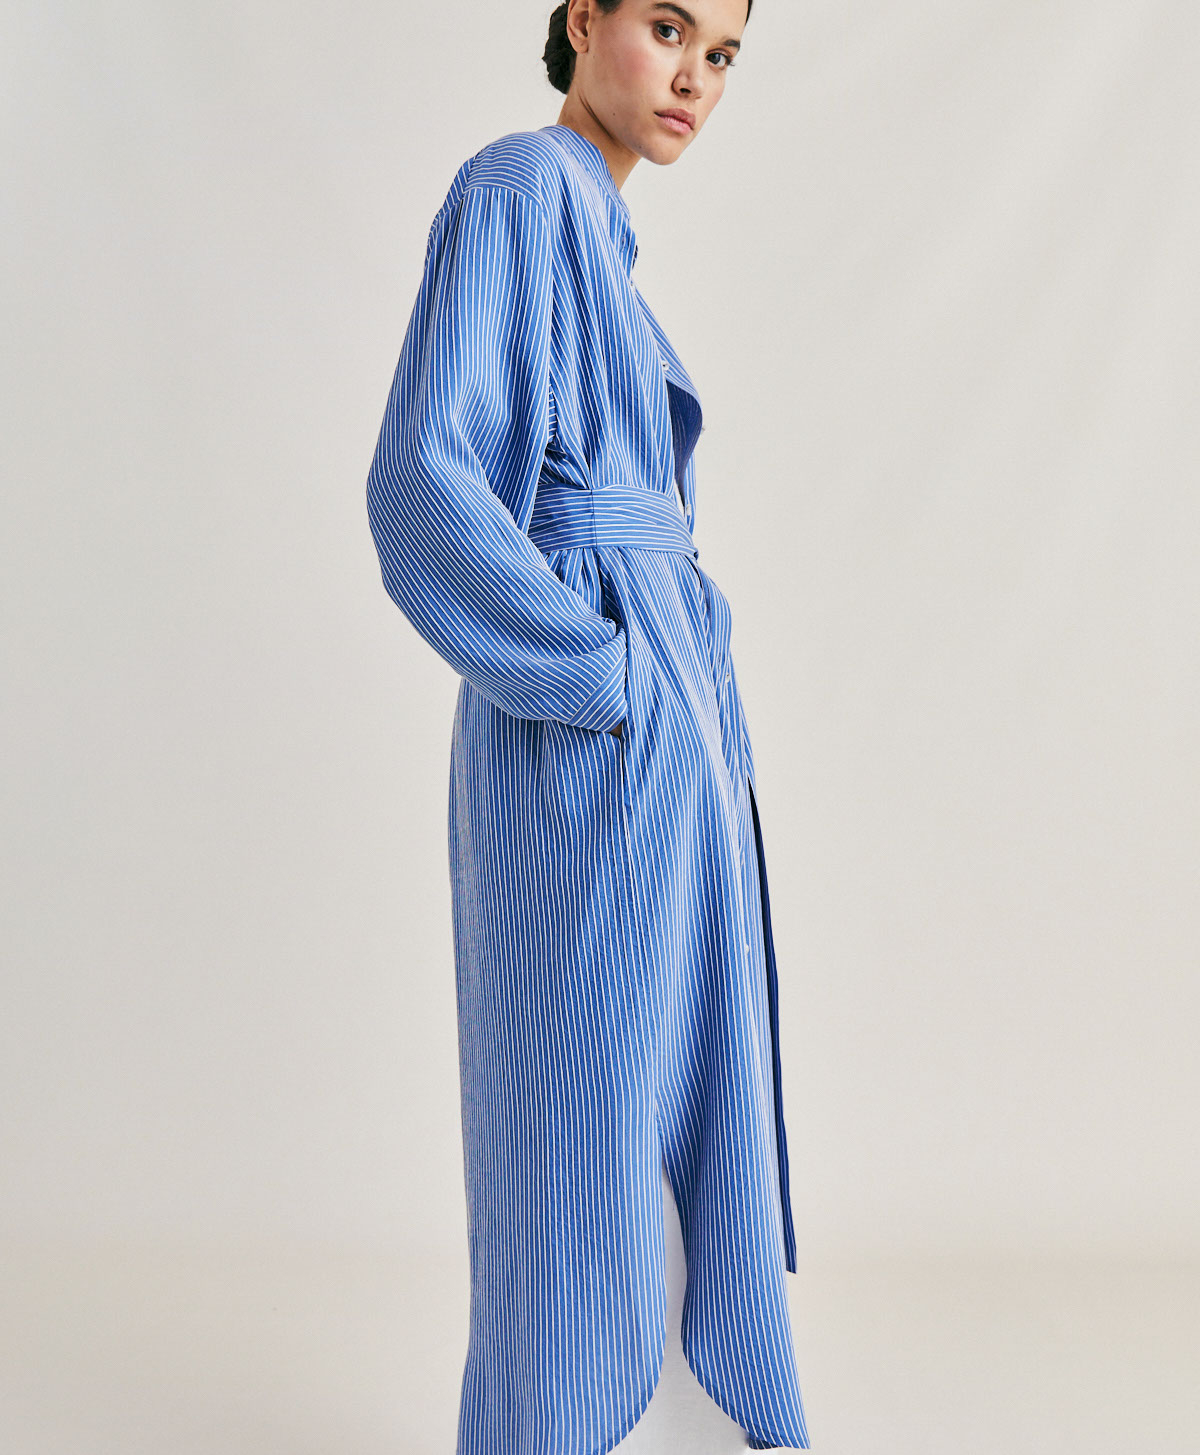 ZAIRA DRESS IN MULTI STRIPED VISCOSE SILK - LIGHT BLUE/CREAM - Momonì